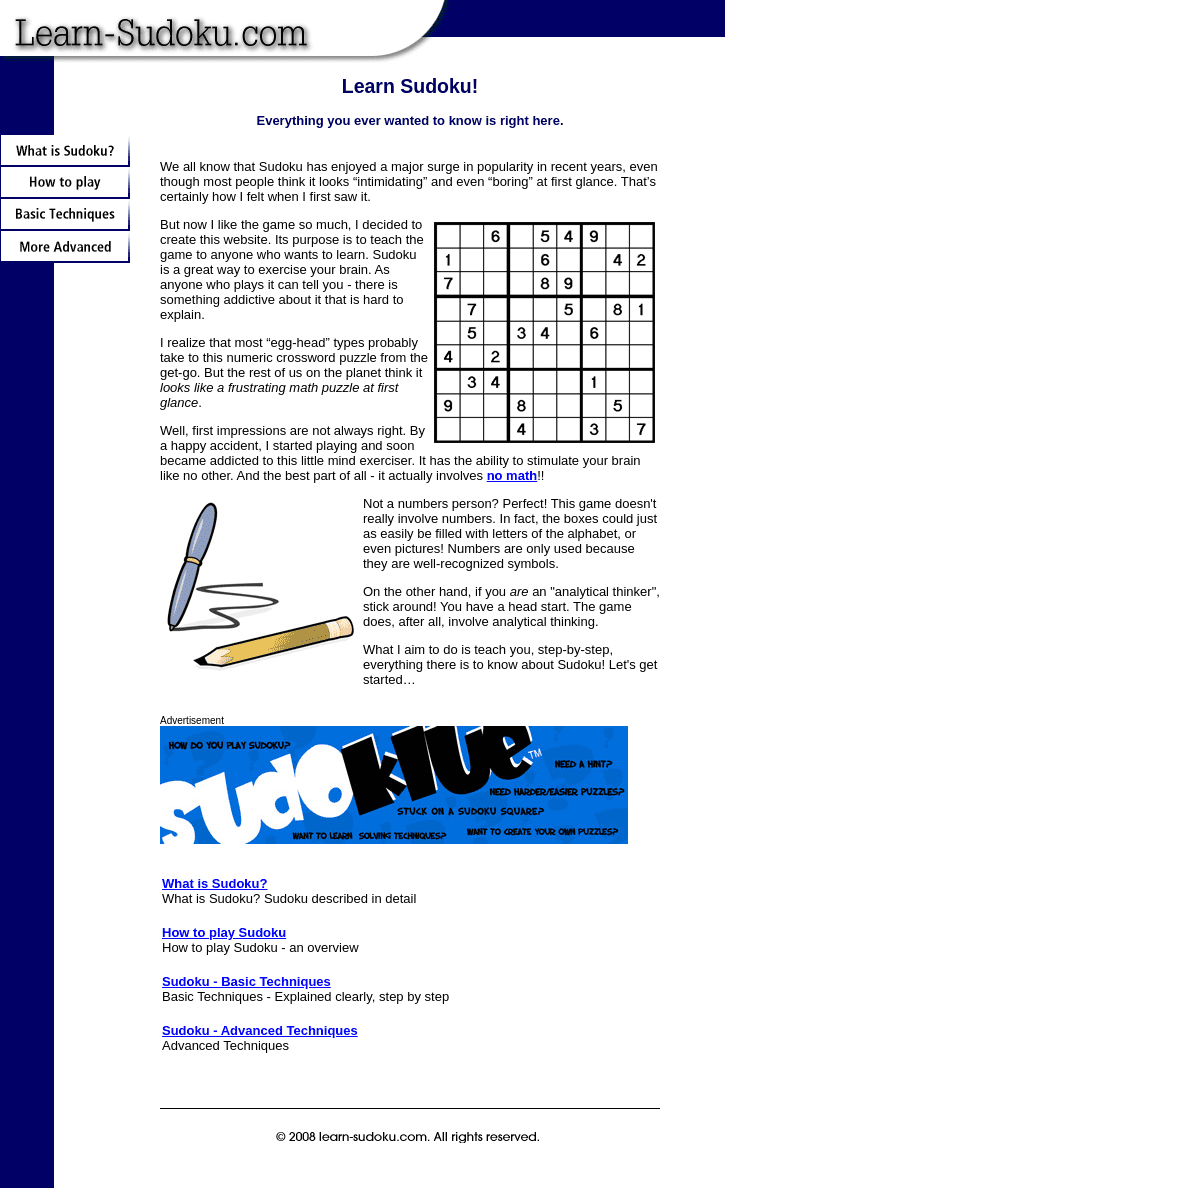 A complete backup of learn-sudoku.com